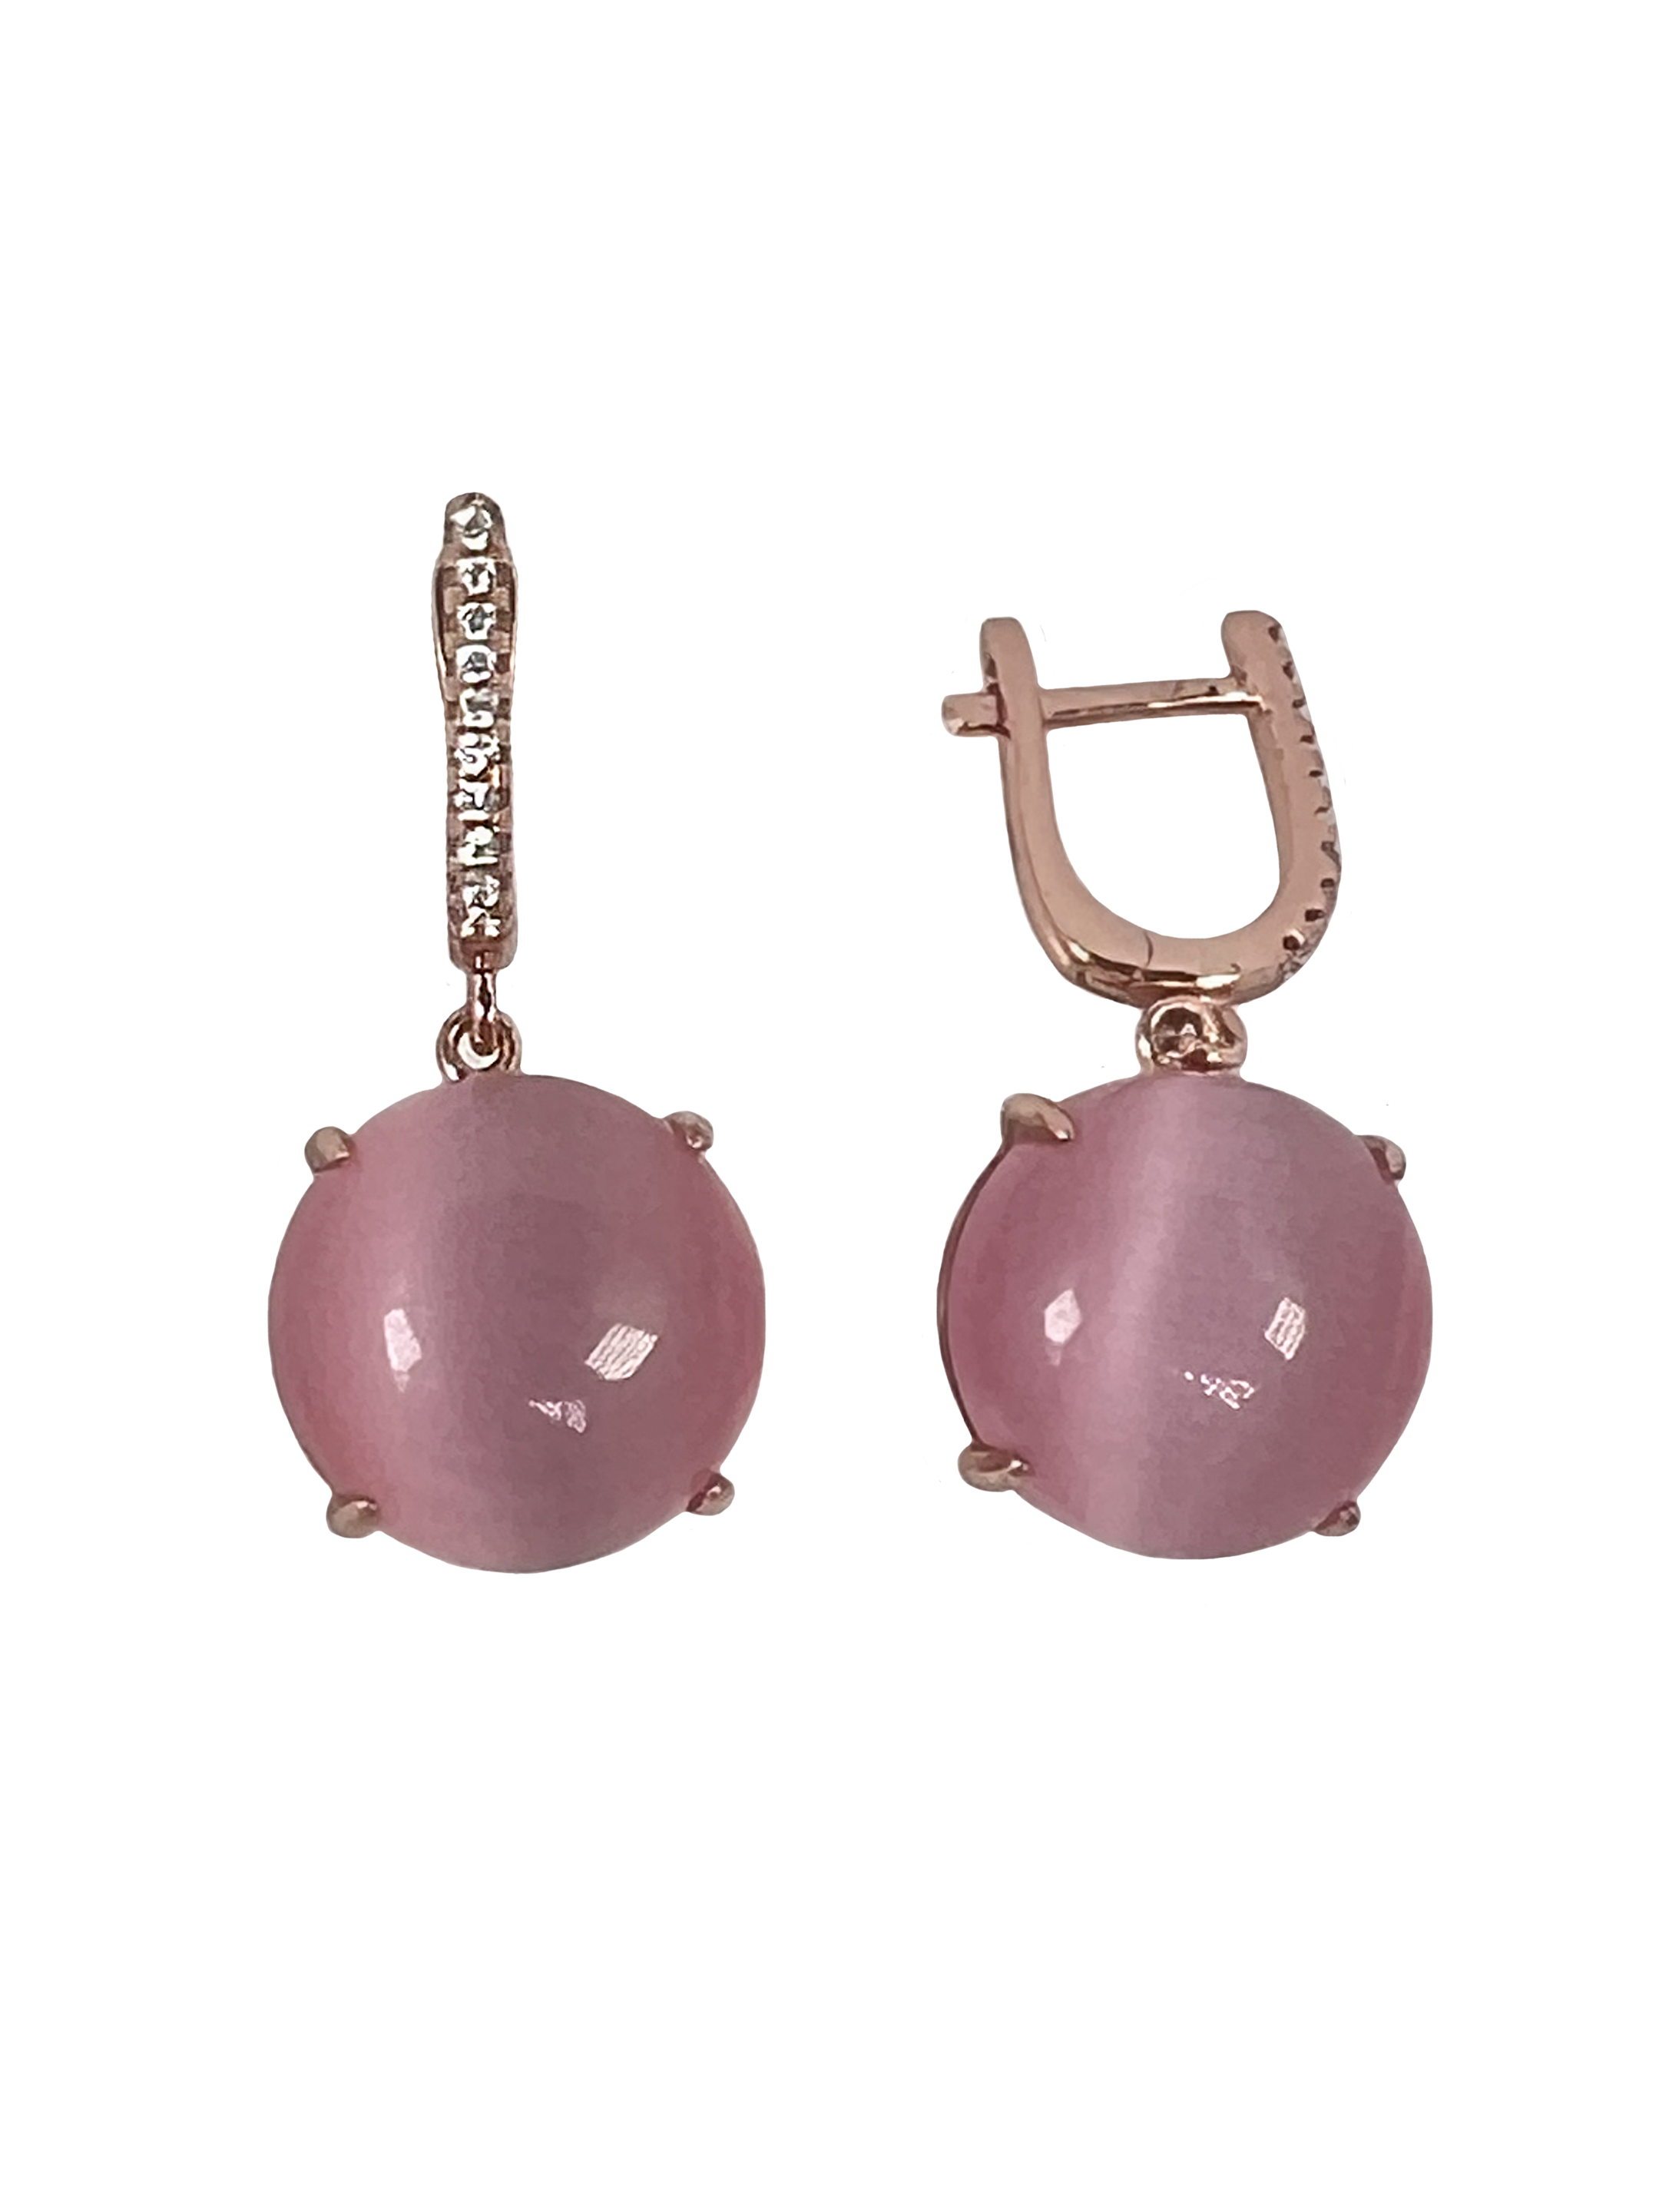 Ασημένια σκουλαρίκια με επιφανειακή επεξεργασία και ροζ πέτρες